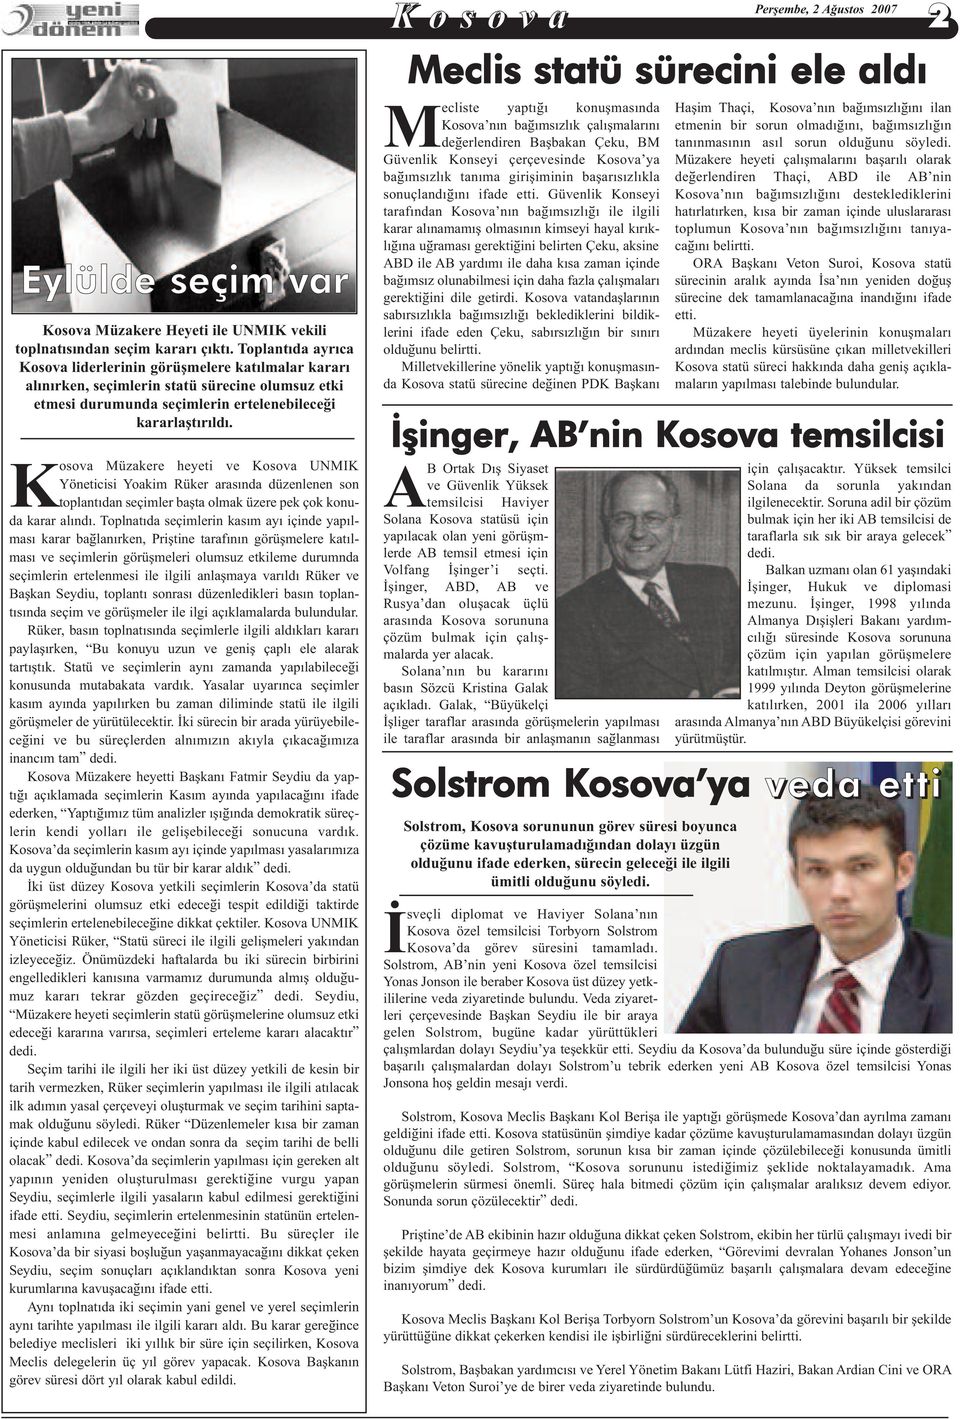 Kosova Müzakere heyeti ve Kosova UNMIK Yöneticisi Yoakim Rüker arasýnda düzenlenen son toplantýdan seçimler baþta olmak üzere pek çok konuda karar alýndý.